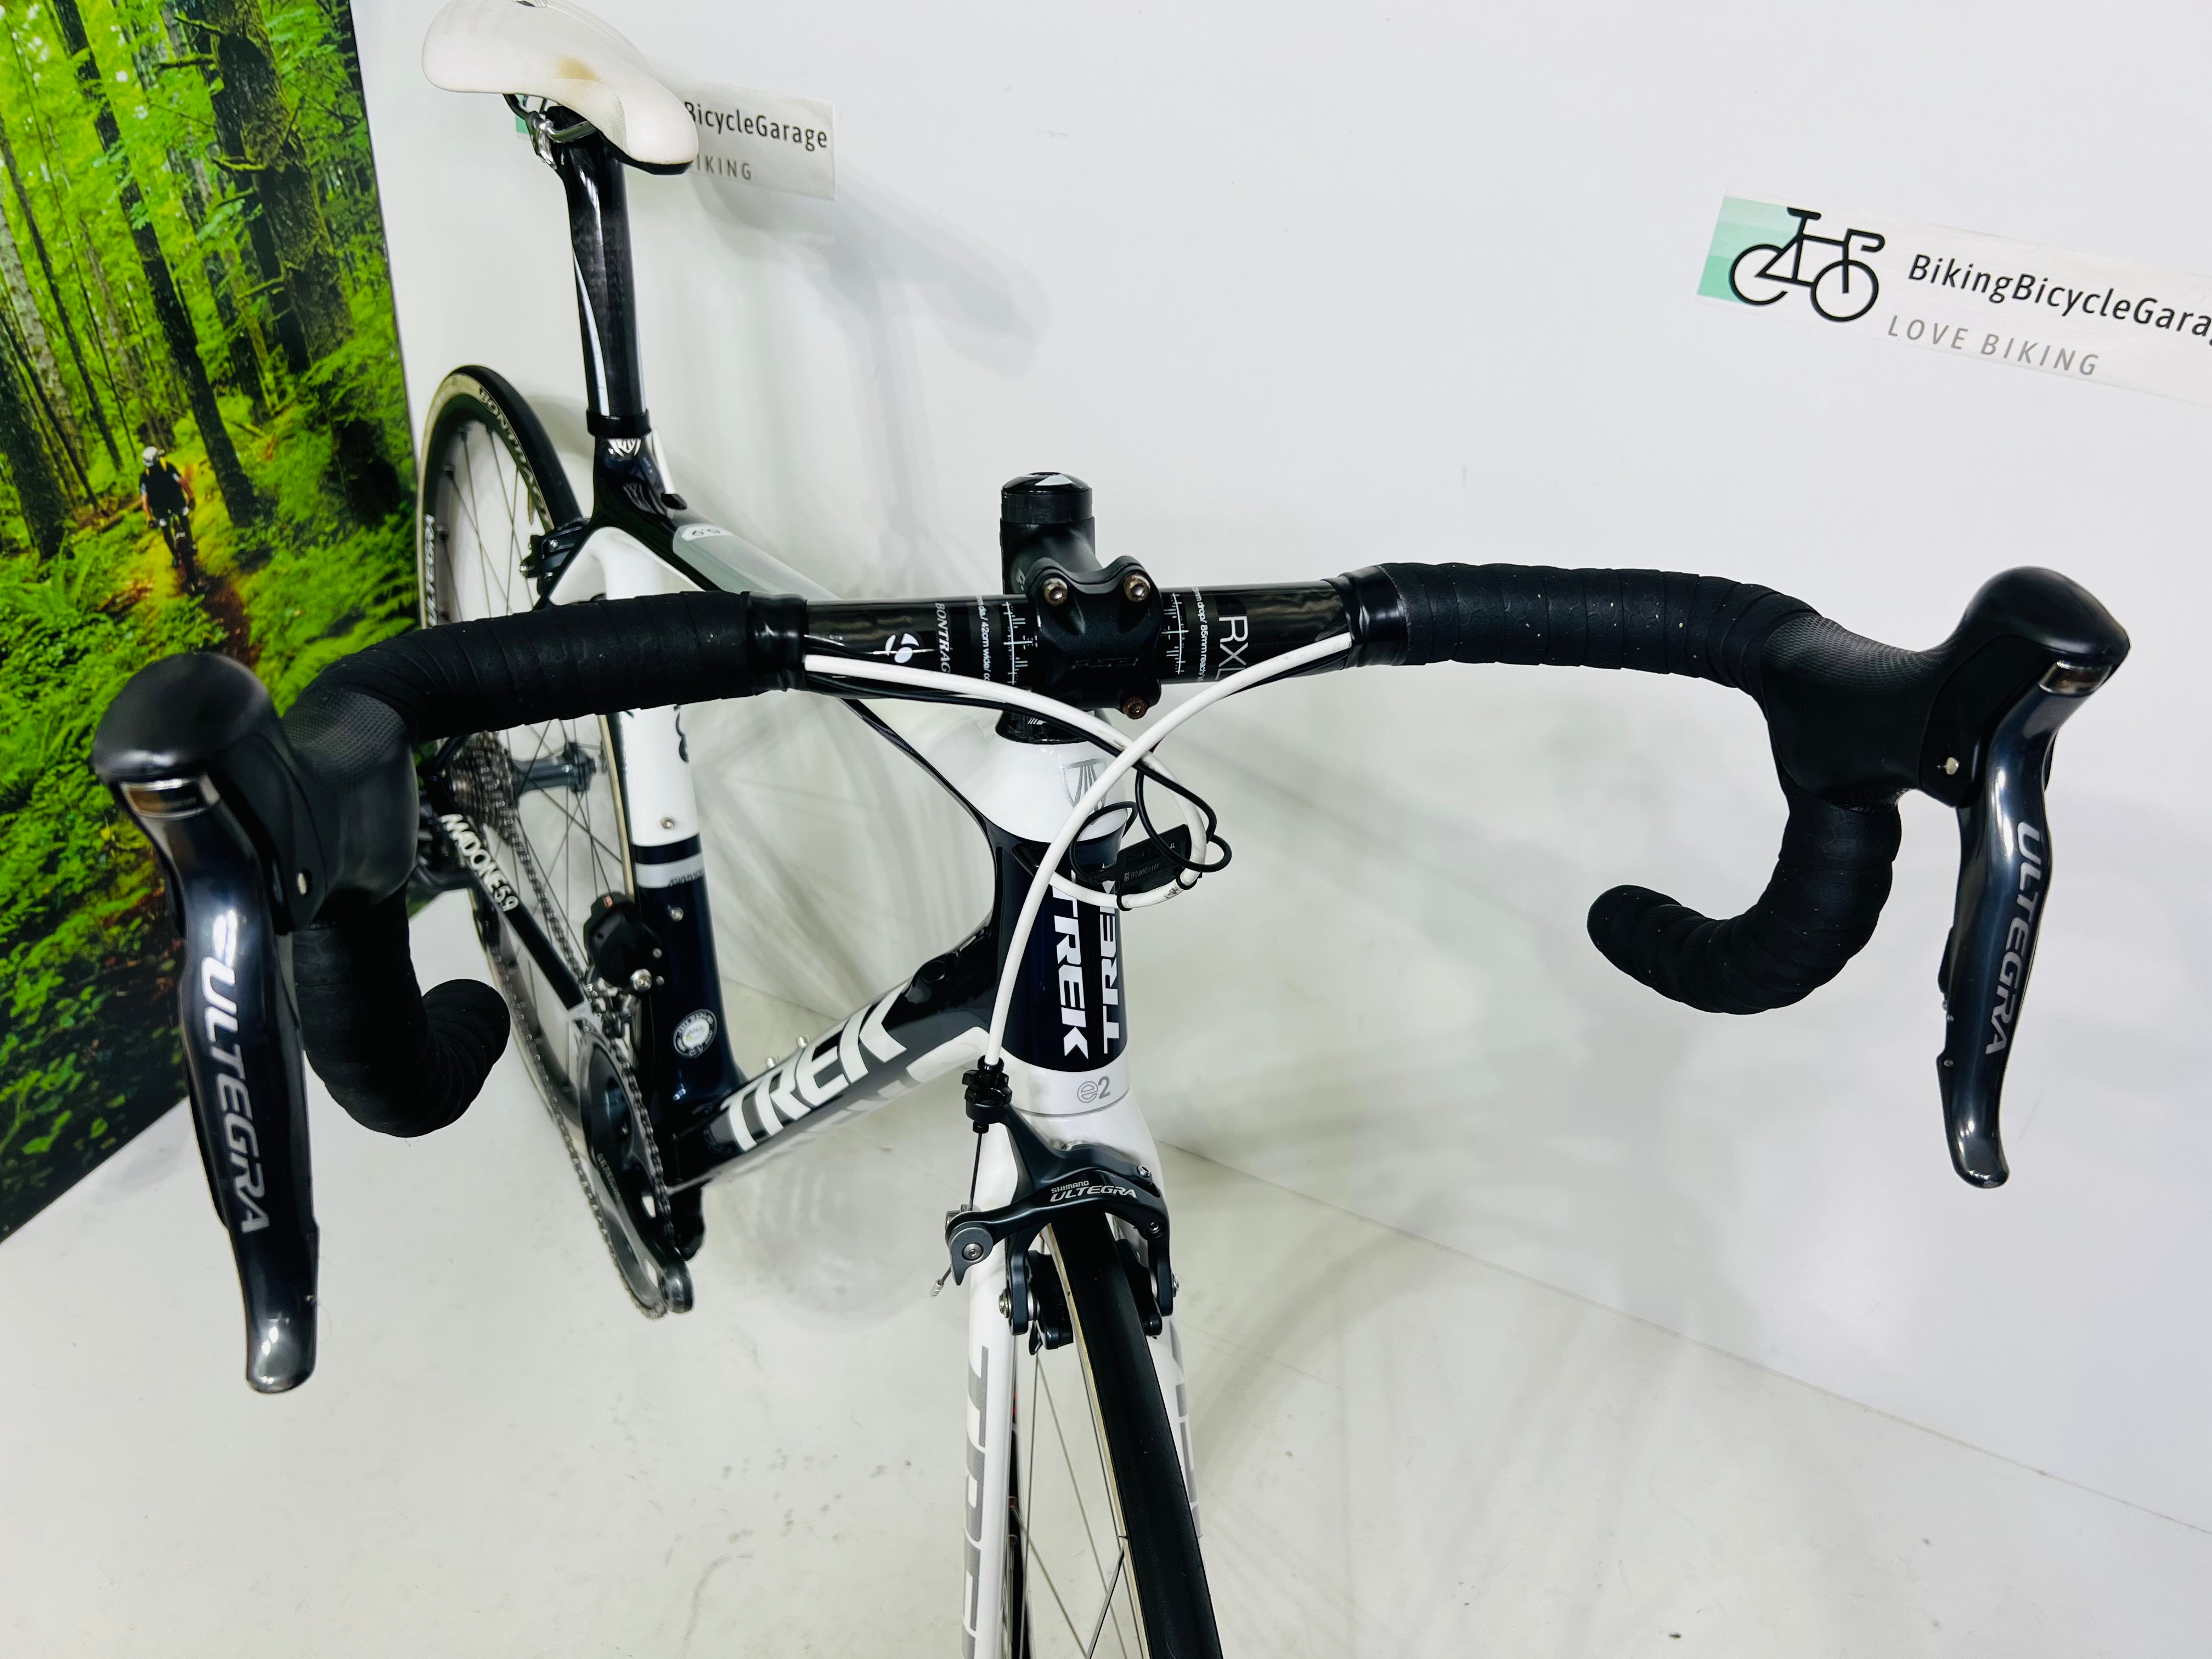 Trek Madone 5.9 Carbon Fiber Road Bike- 2012, 54cm, Shimano Ultegra Di2